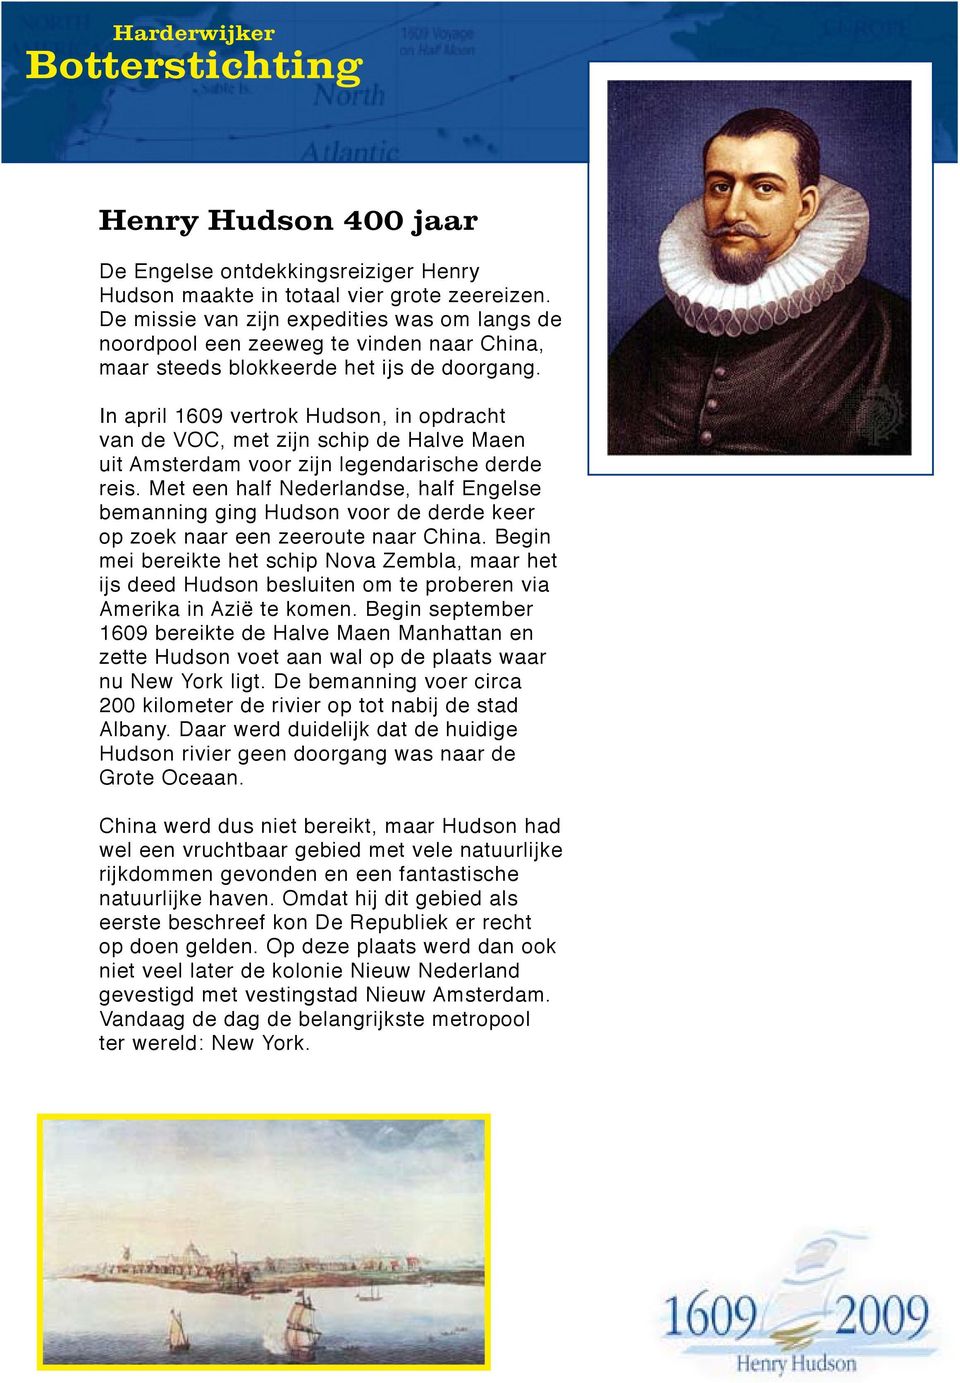 In april 1609 vertrok Hudson, in opdracht van de VOC, met zijn schip de Halve Maen uit Amsterdam voor zijn legendarische derde reis.